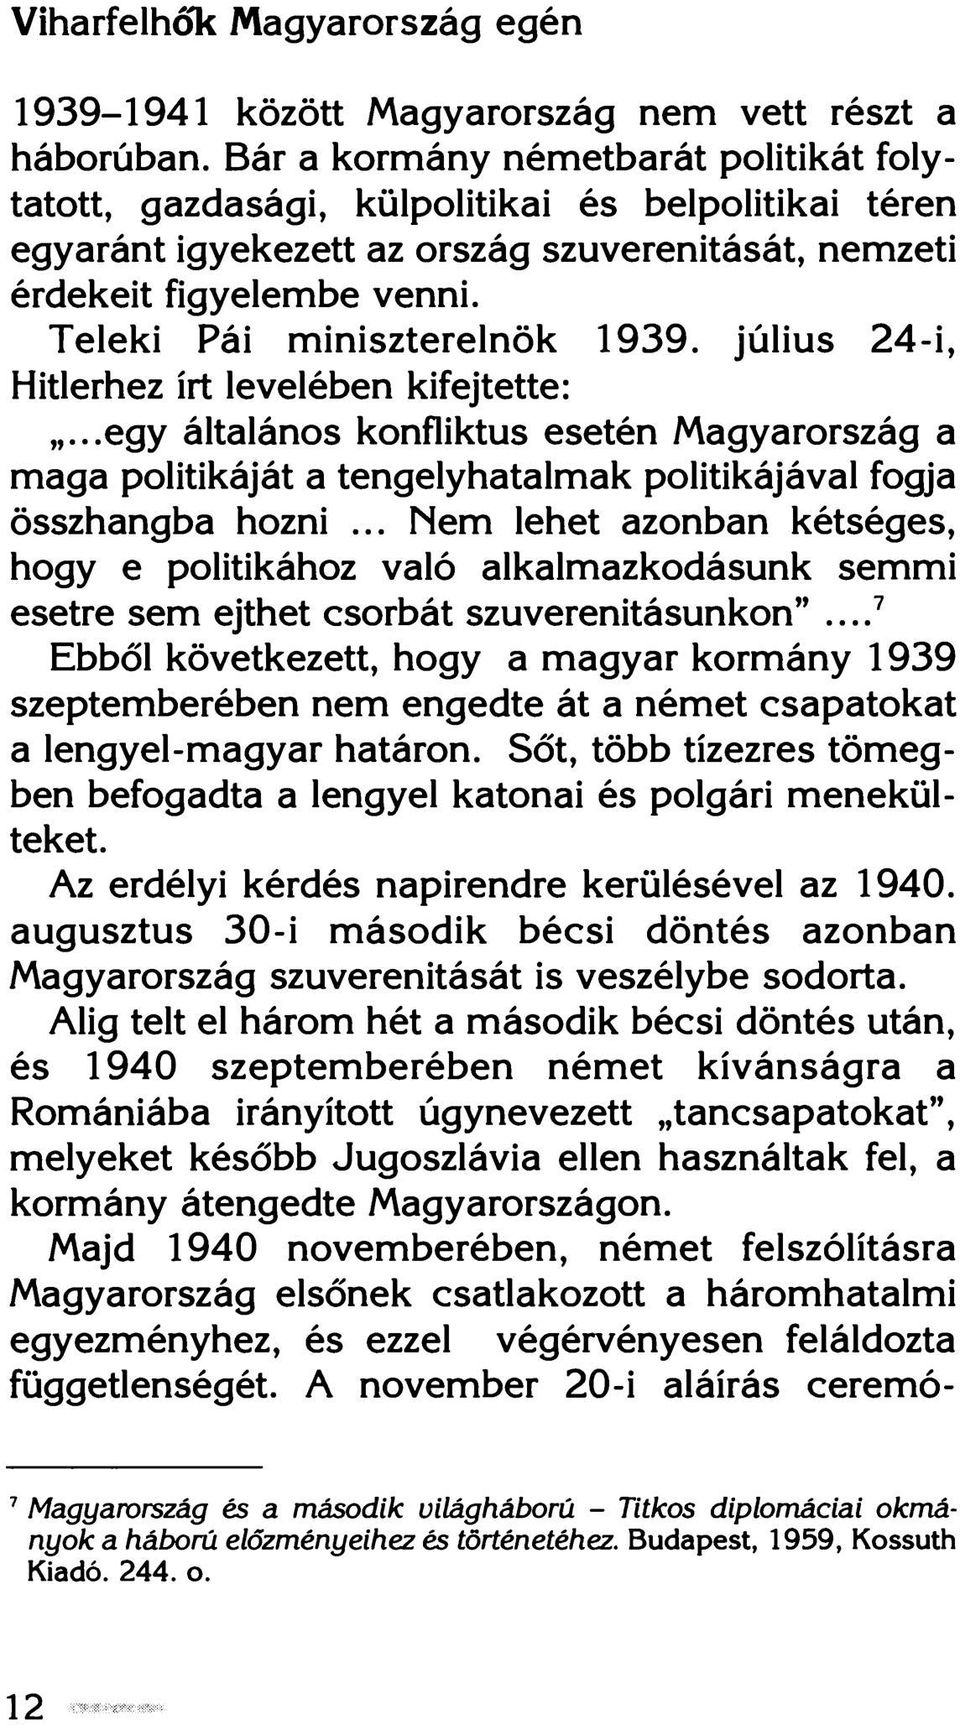 Teleki Fái miniszterelnök 1939. július 24-i, Hitlerhez írt levelében kifejtette:...egy általános konfliktus esetén Magyarország a maga politikáját a tengelyhatalmak politikájával fogja összhangba hozni.